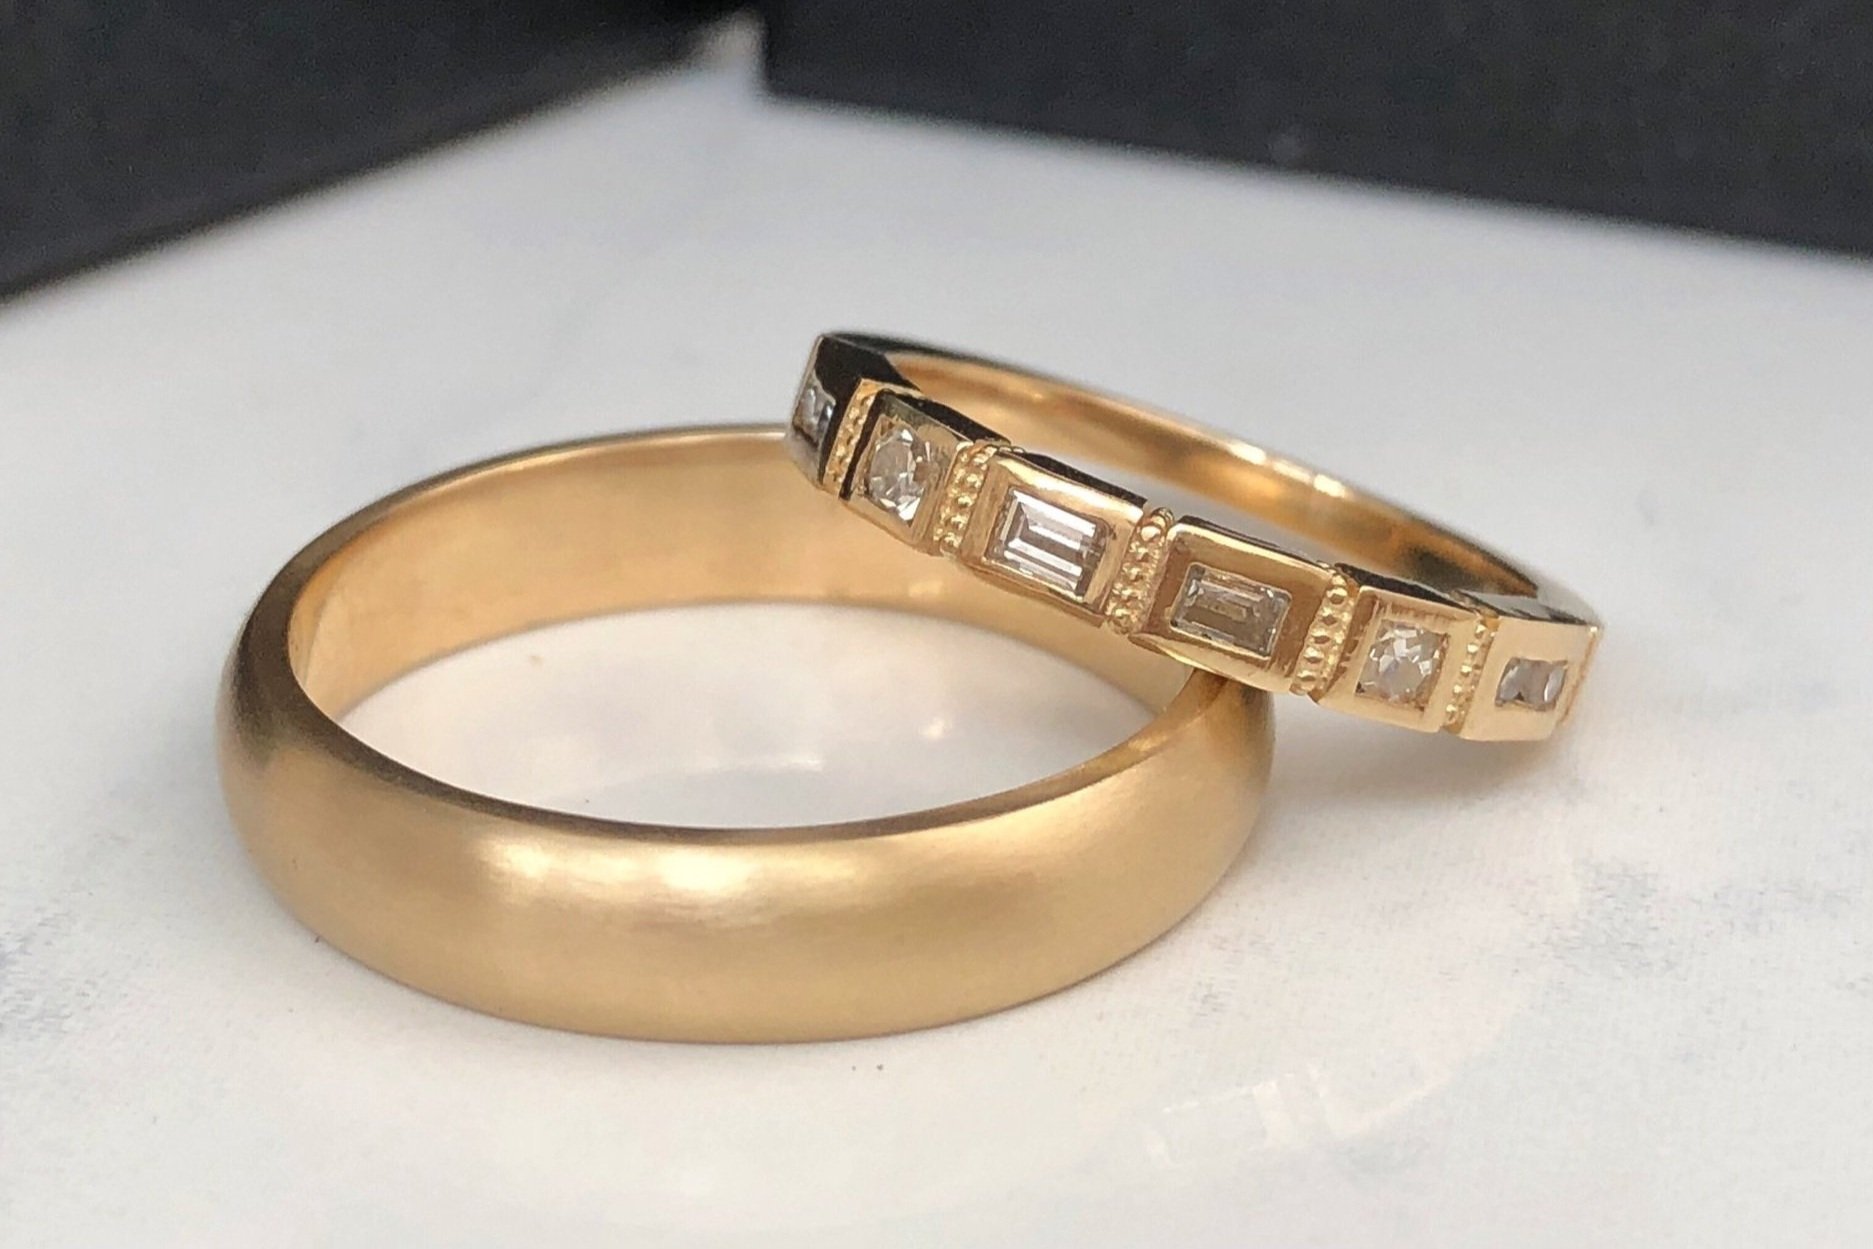 Liz + Ben Wedding Bands - Client diamonds + 14k yellow gold